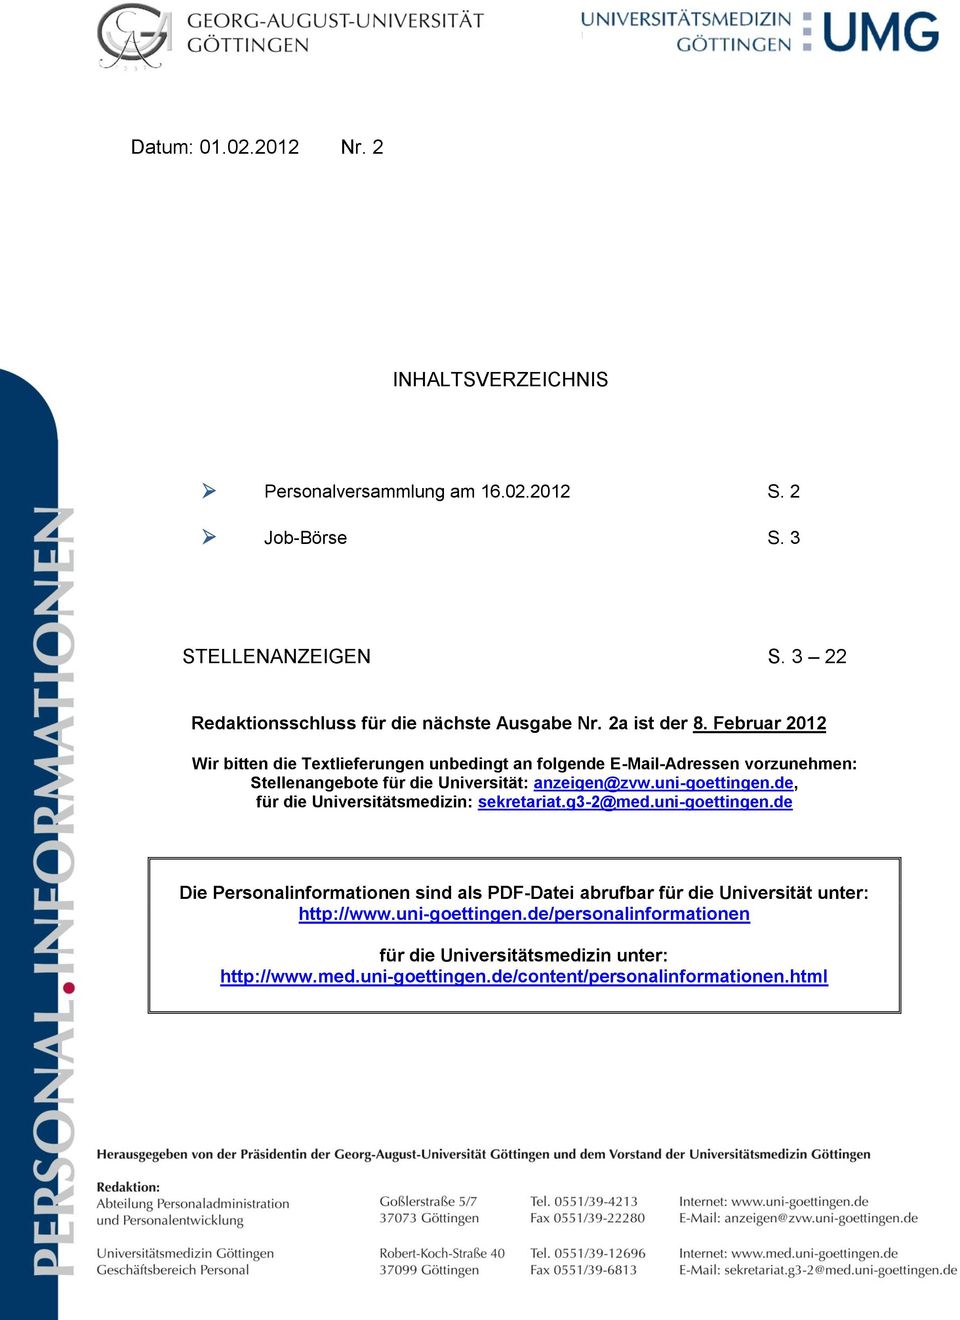 September 2011 Wir bitten die Textlieferungen unbedingt an folgende E-Mail-Adressen vorzunehmen: Stellenangebote für die Universität: anzeigen@zvw.uni-goettingen.